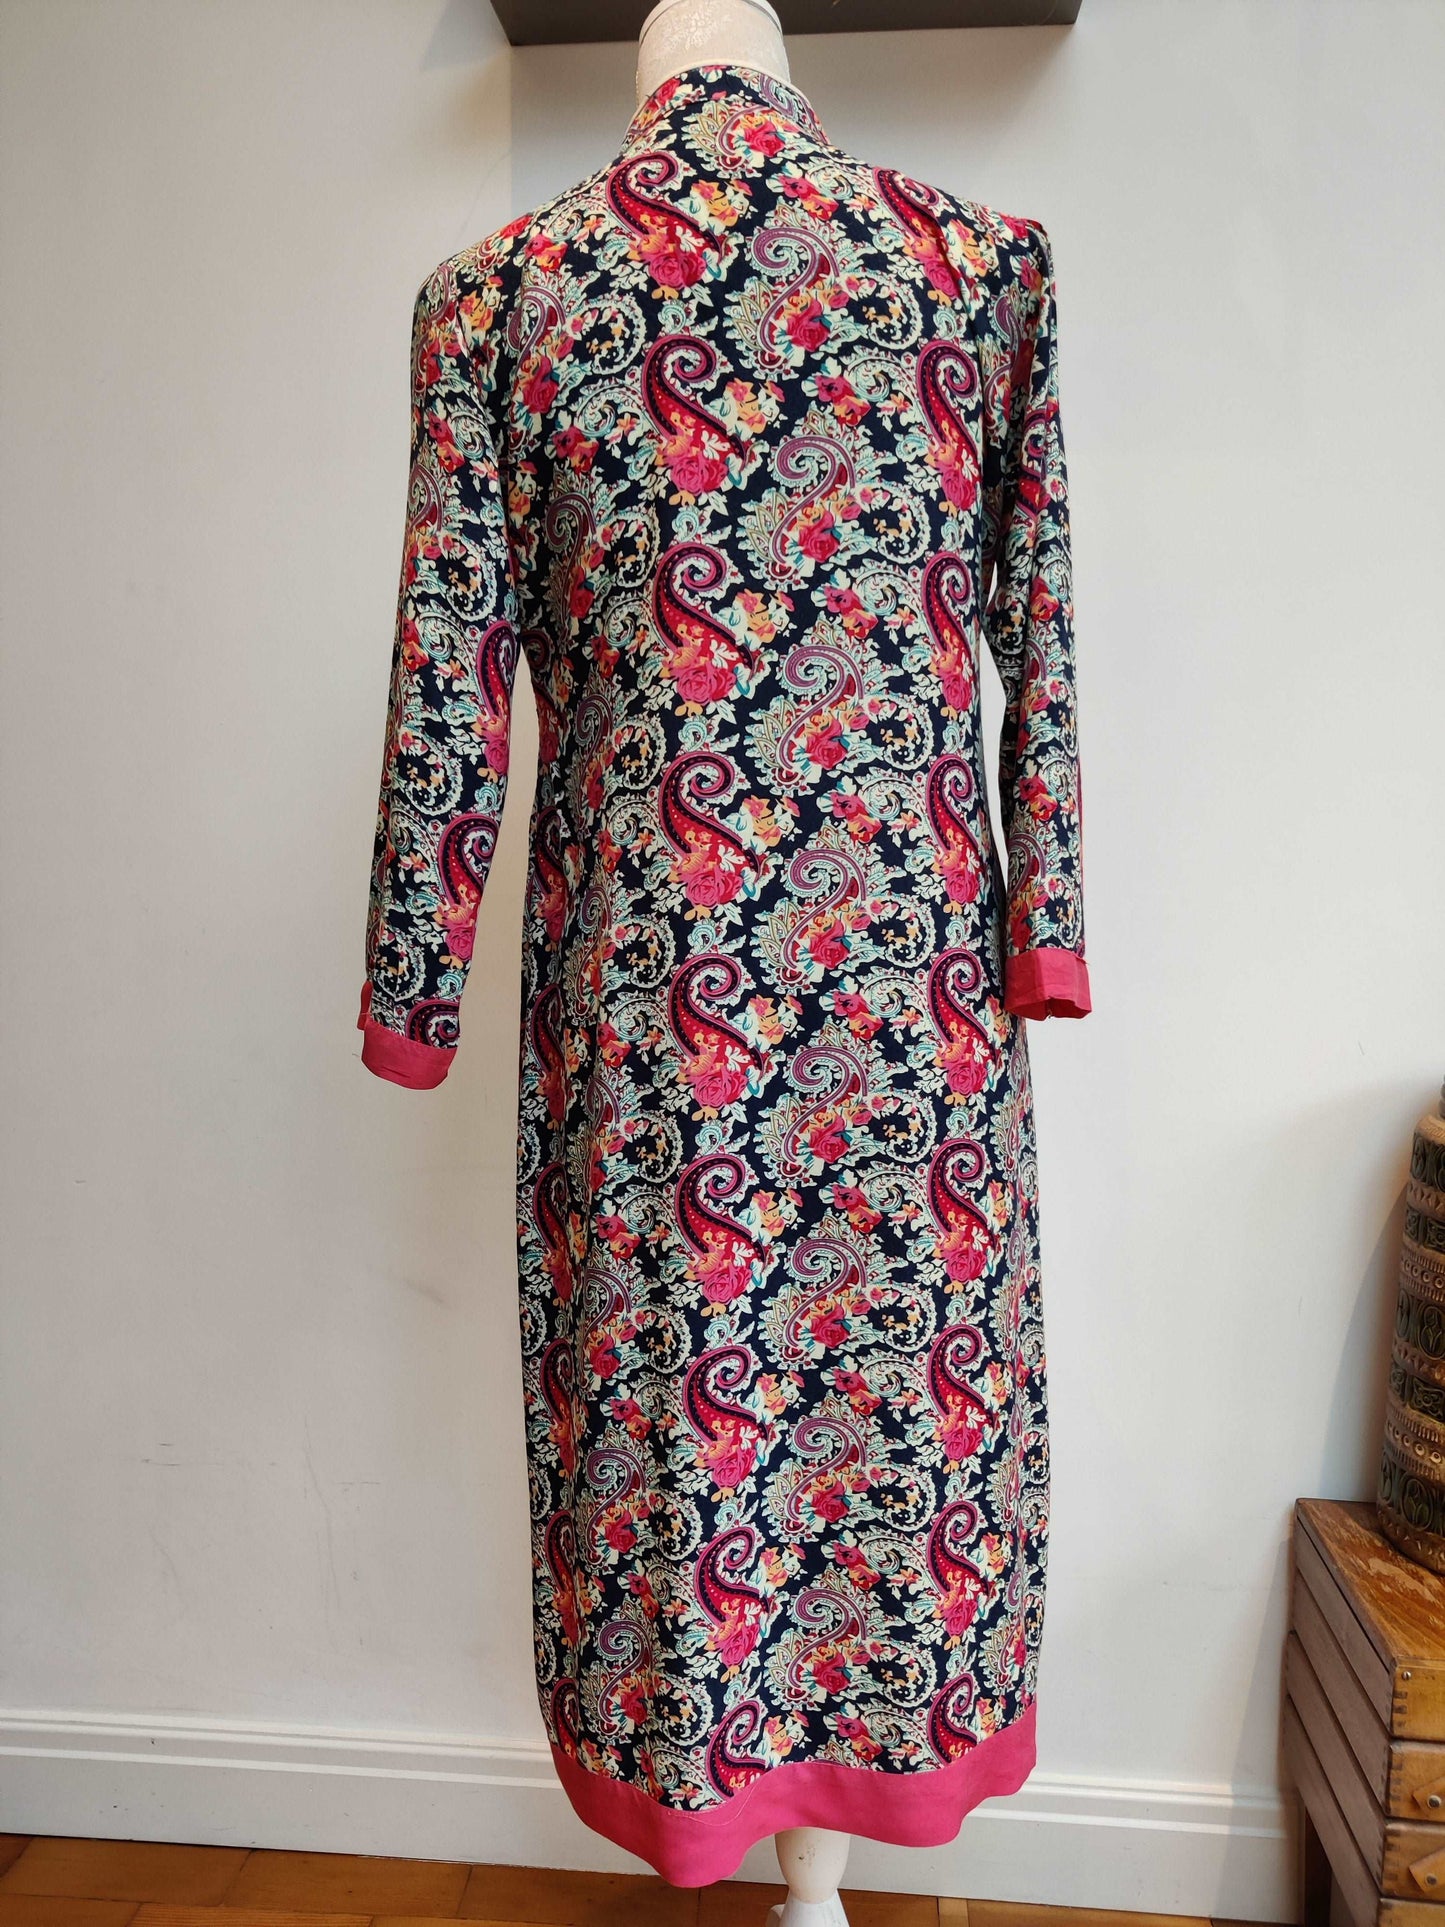 Beautiful pink paisley smock dress. Size 10-12.